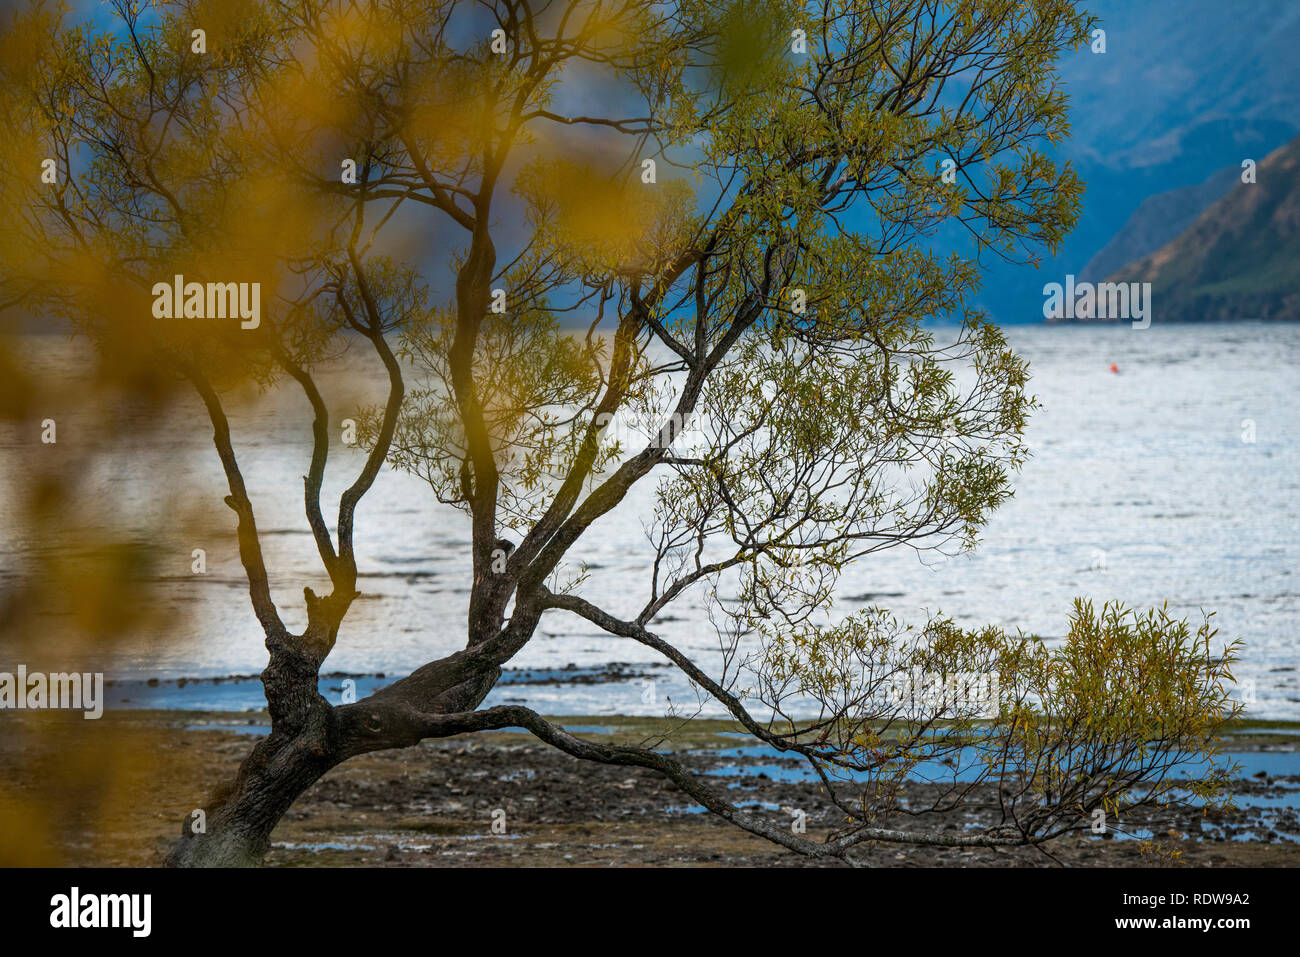 Il famoso 'che arriva a Wanaka albero " è un lone crack willow tree lungo le rive del Lago Wanaka che è diventato un popolare spot fotografico per i turisti. Foto Stock